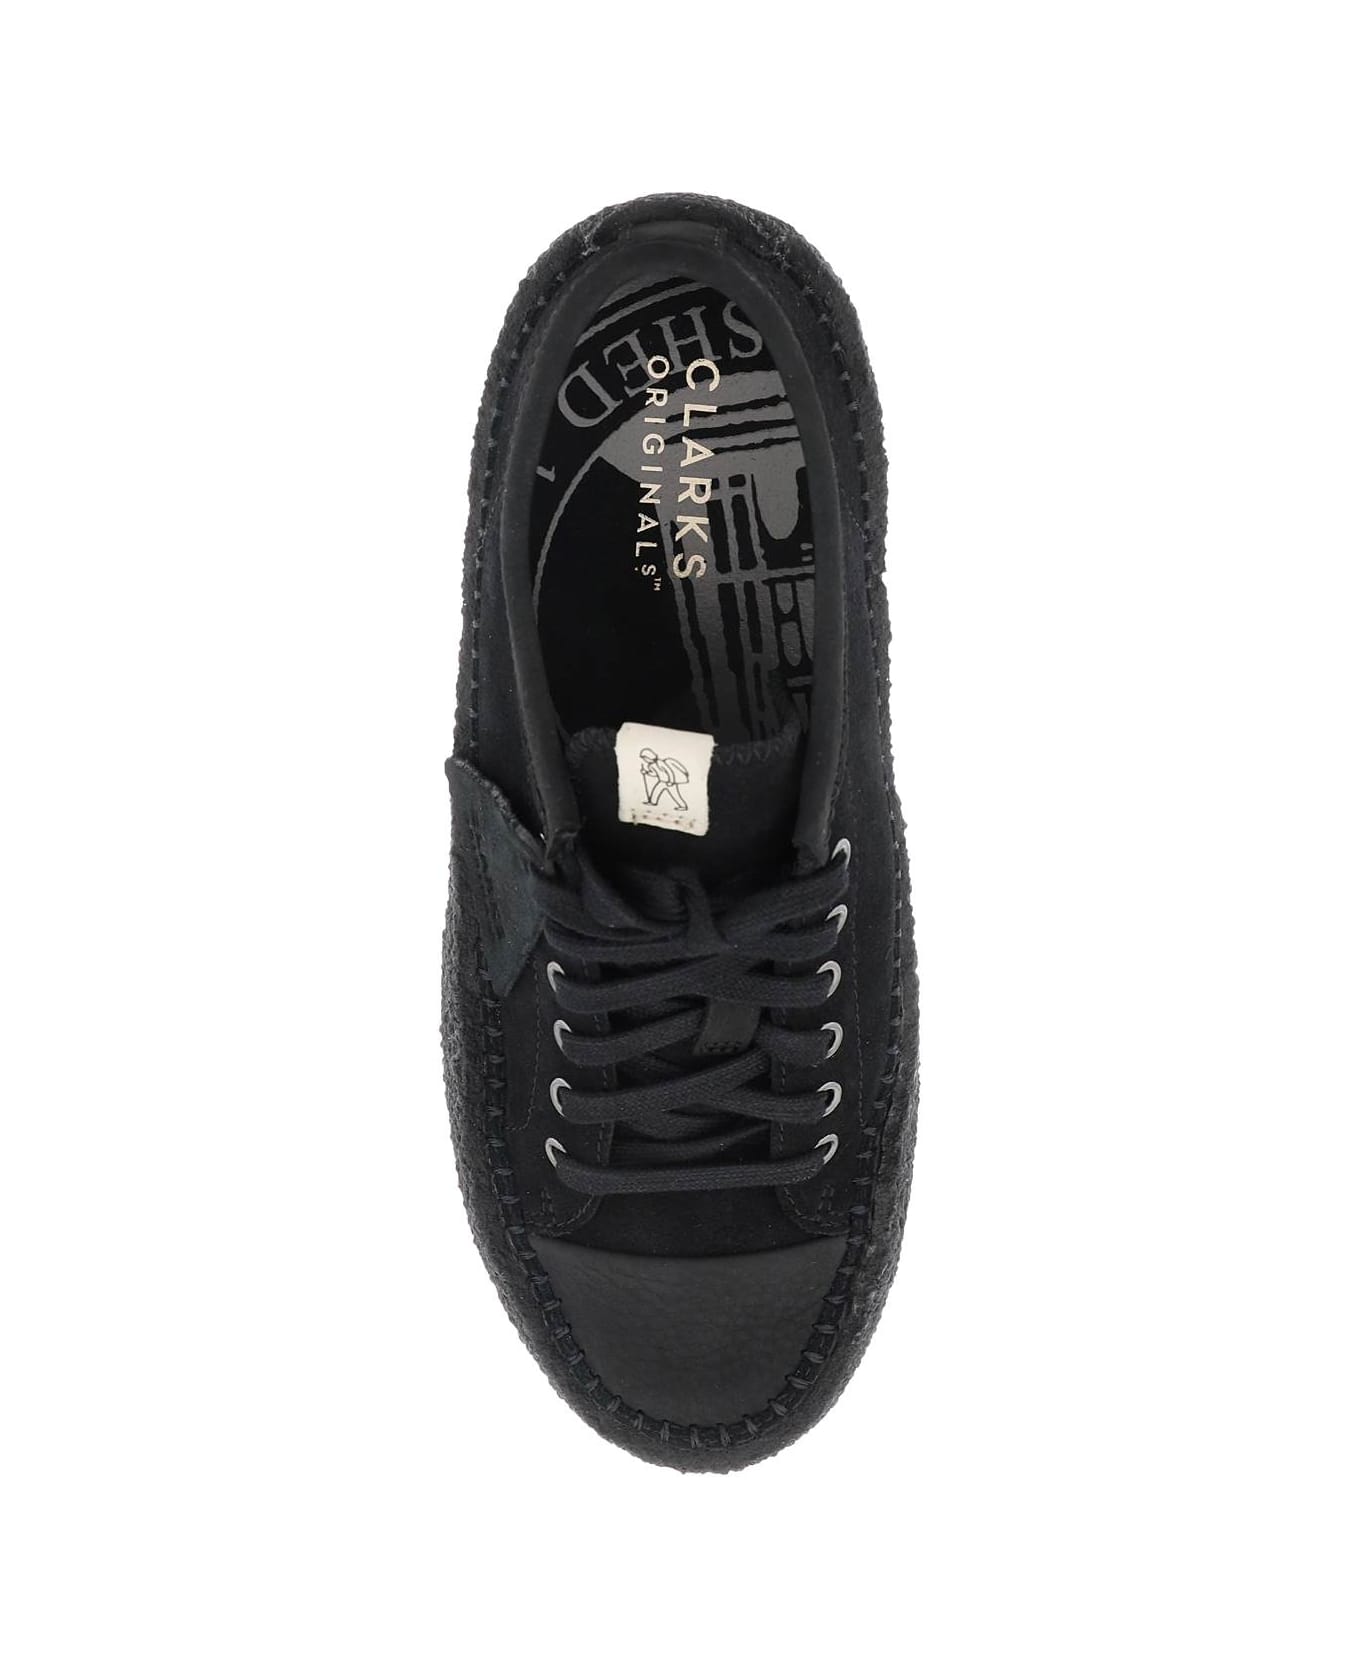 Clarks Suede Leather 'caravan' Sneakers - BLACK (Black) スニーカー